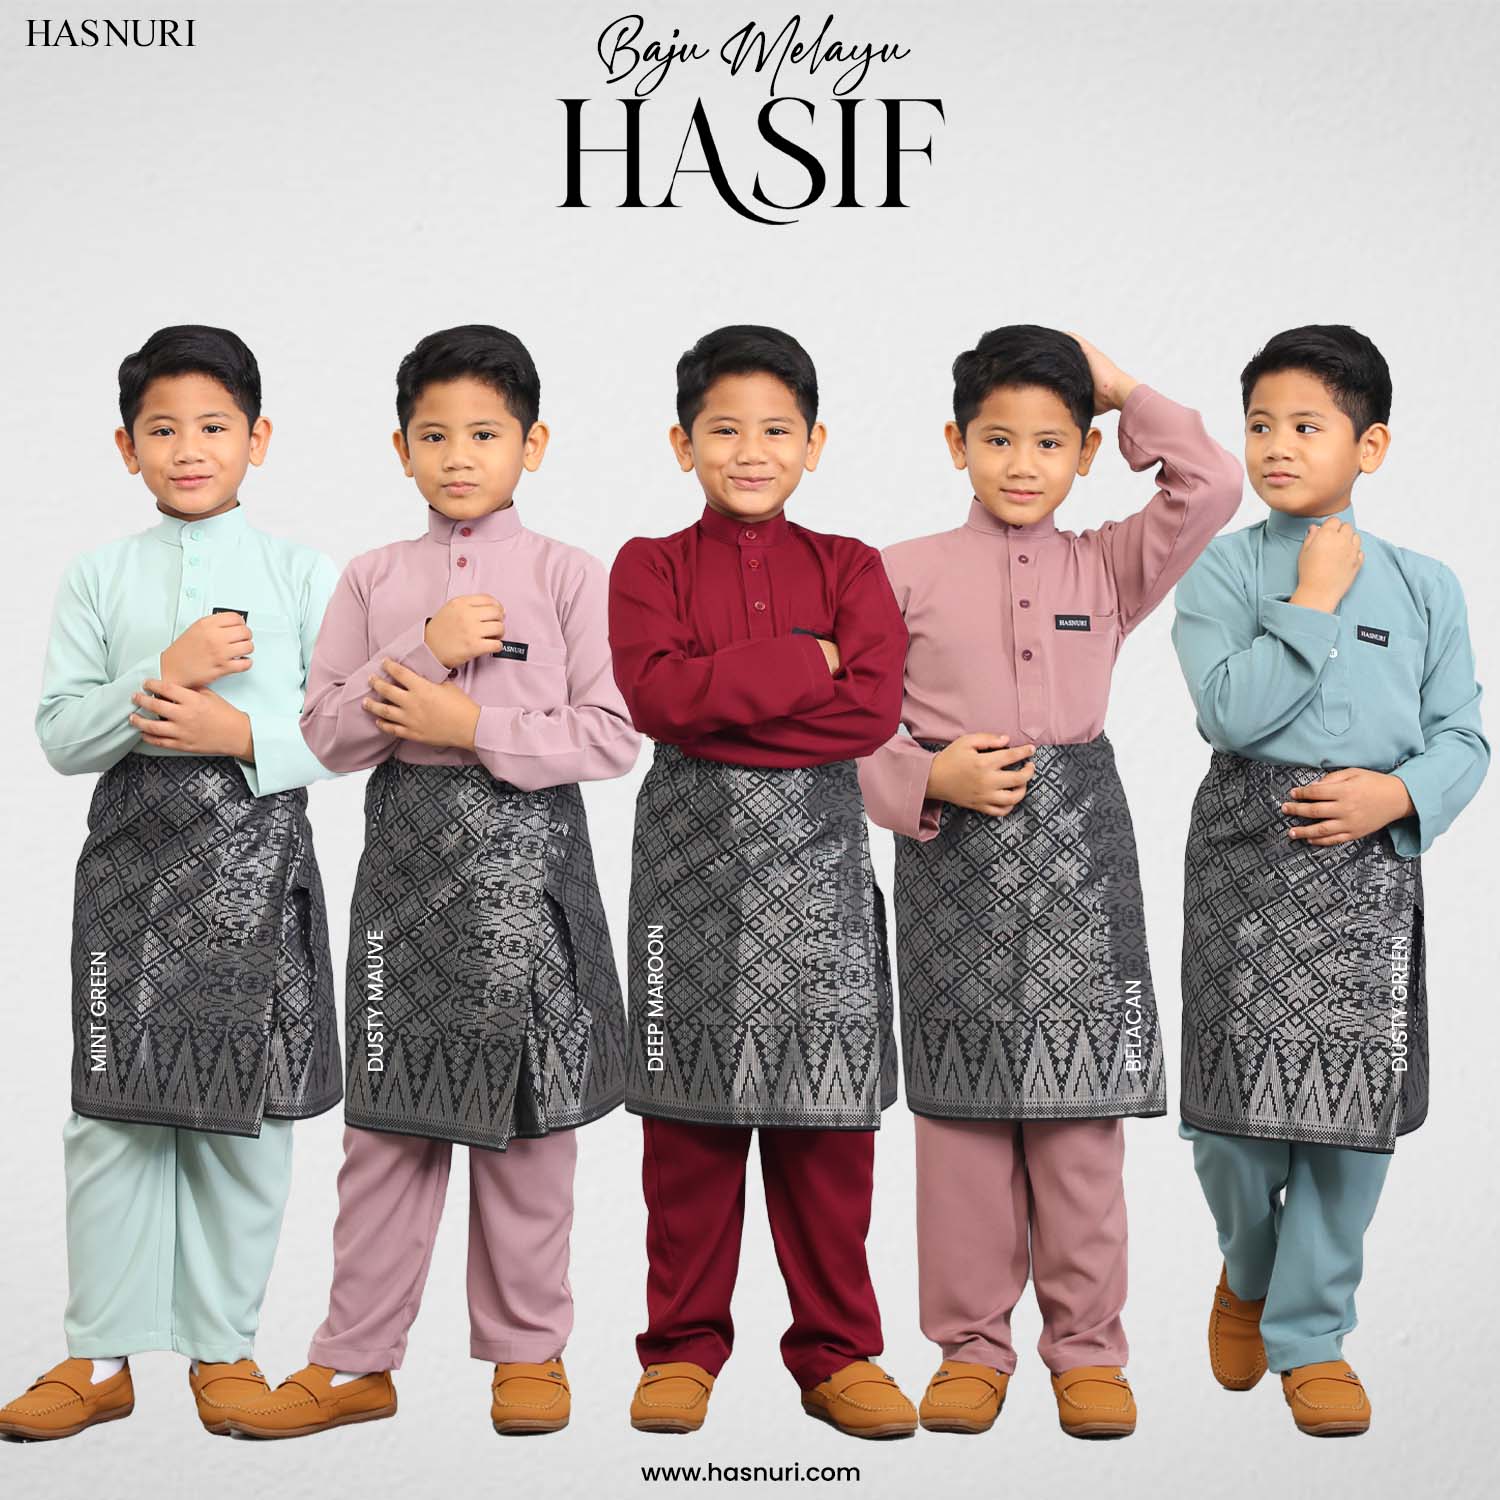 Baju Melayu Hasif Kids - Mint Green